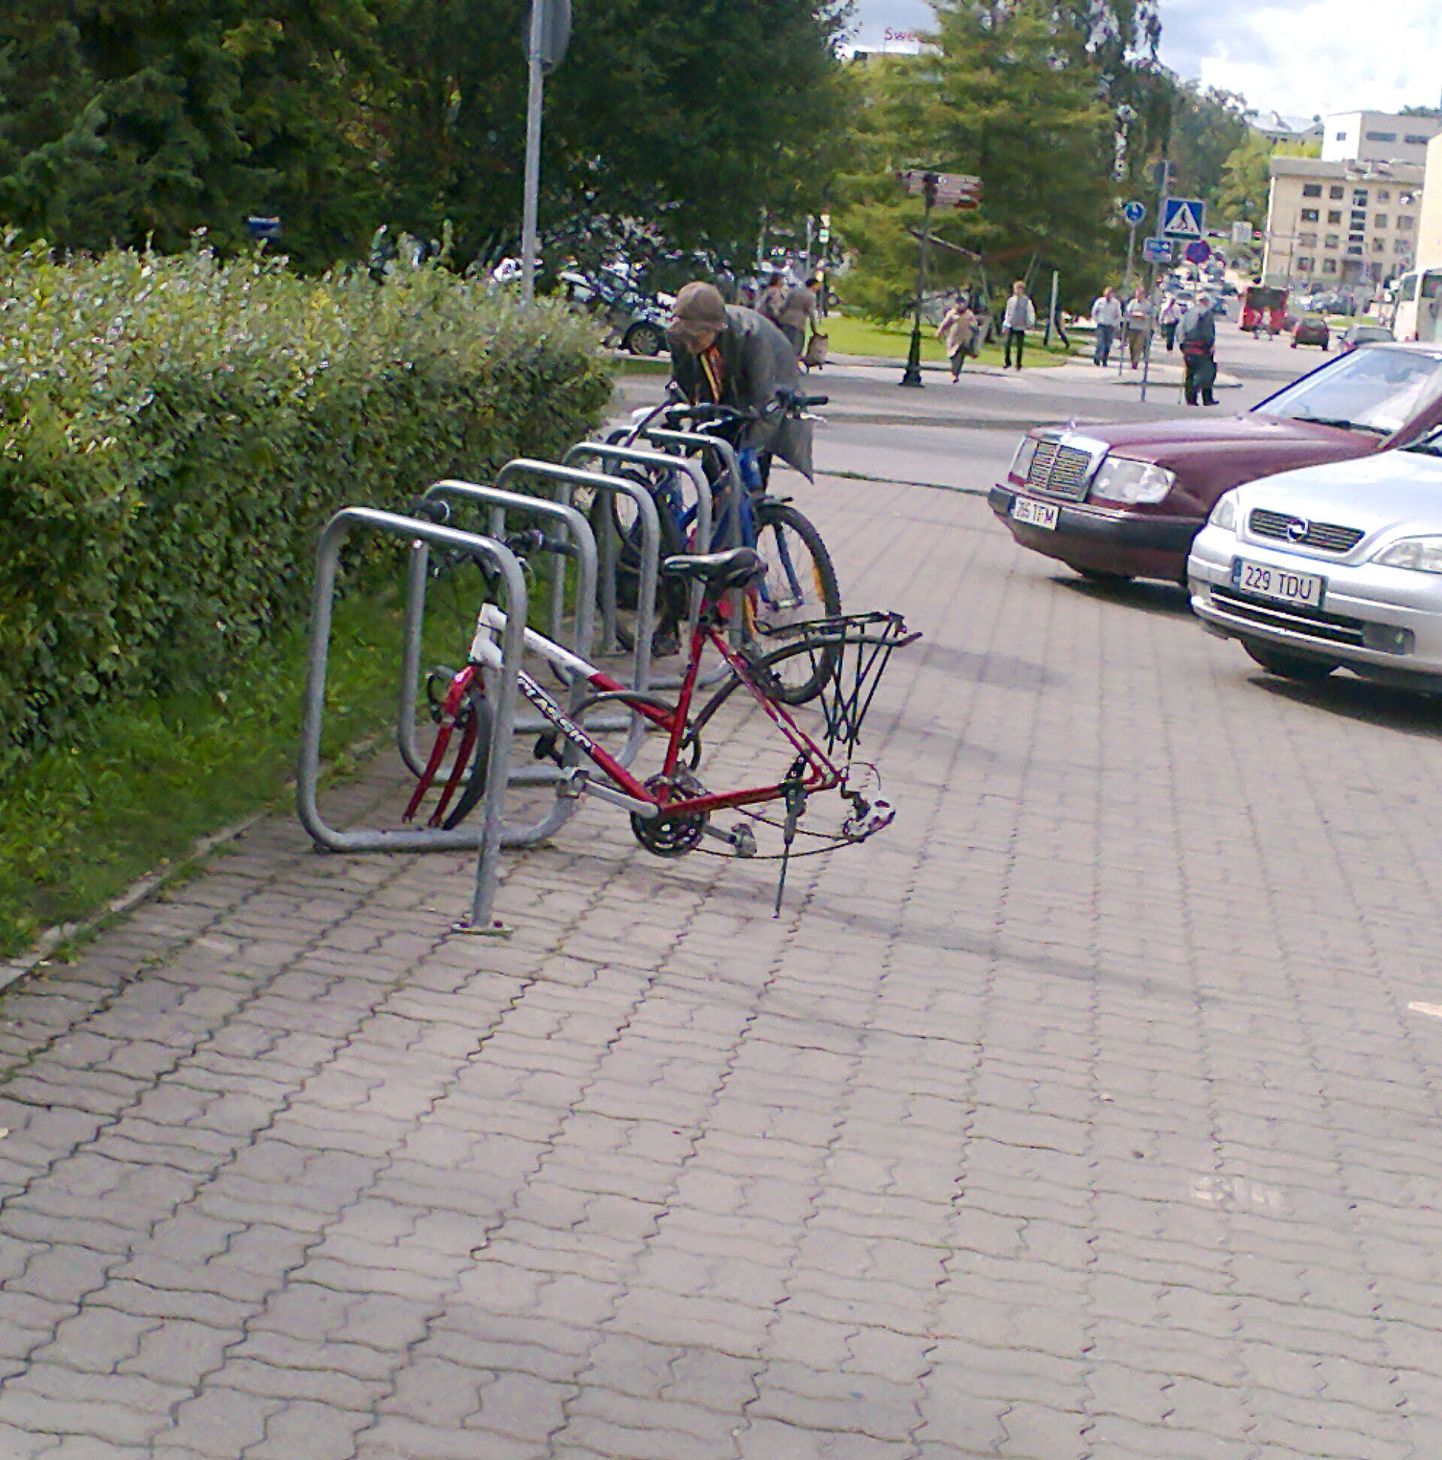 Vaatepilt Tartu avaturu juures 5. septembril. Jalgrattahoidja küljes ripub ratasteta raam.